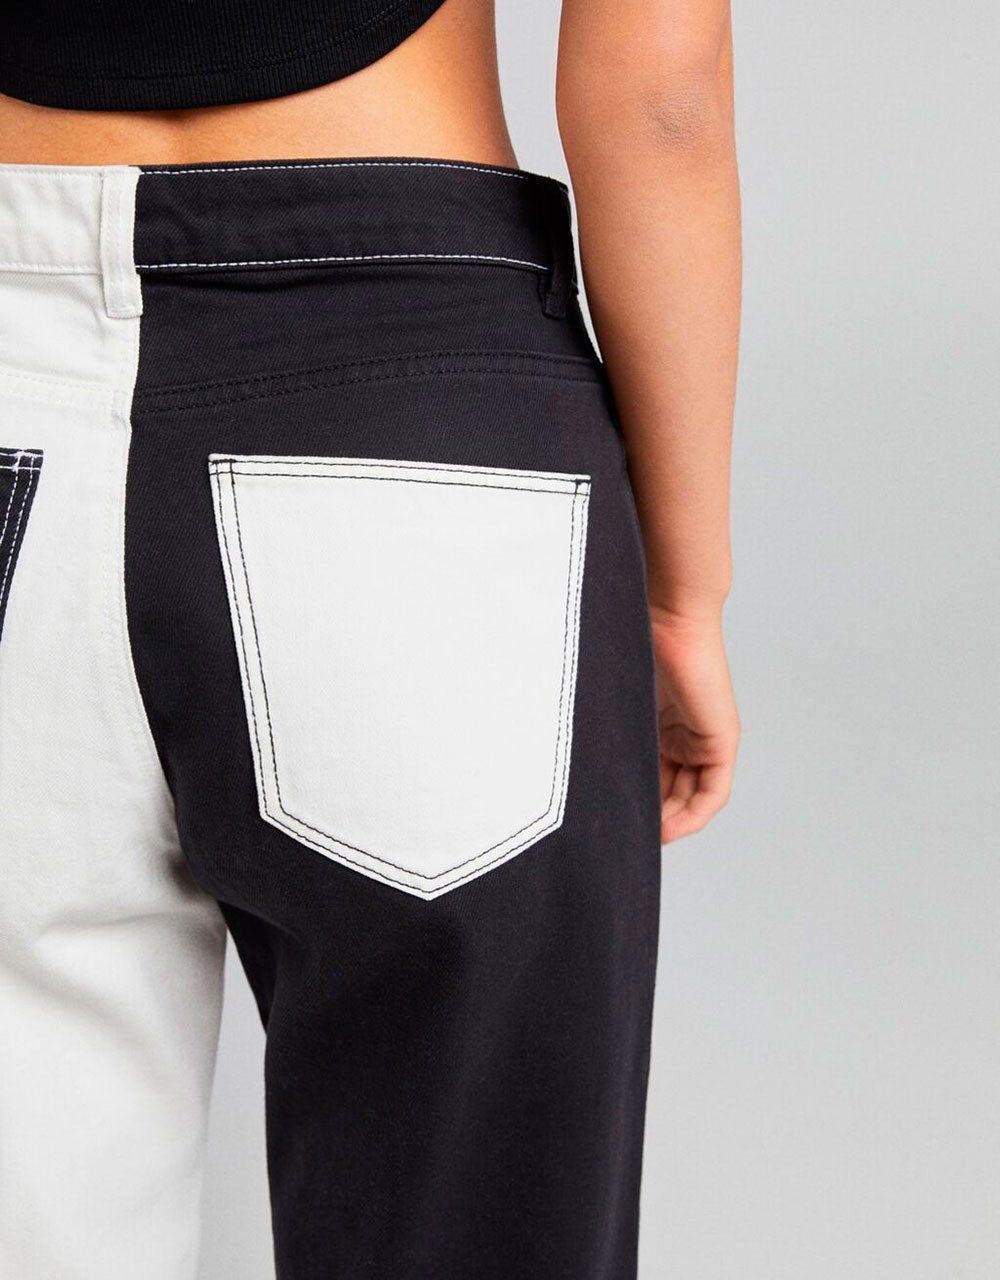 Jeans: Cómo llevar hoy la mezclilla más allá del pantalón